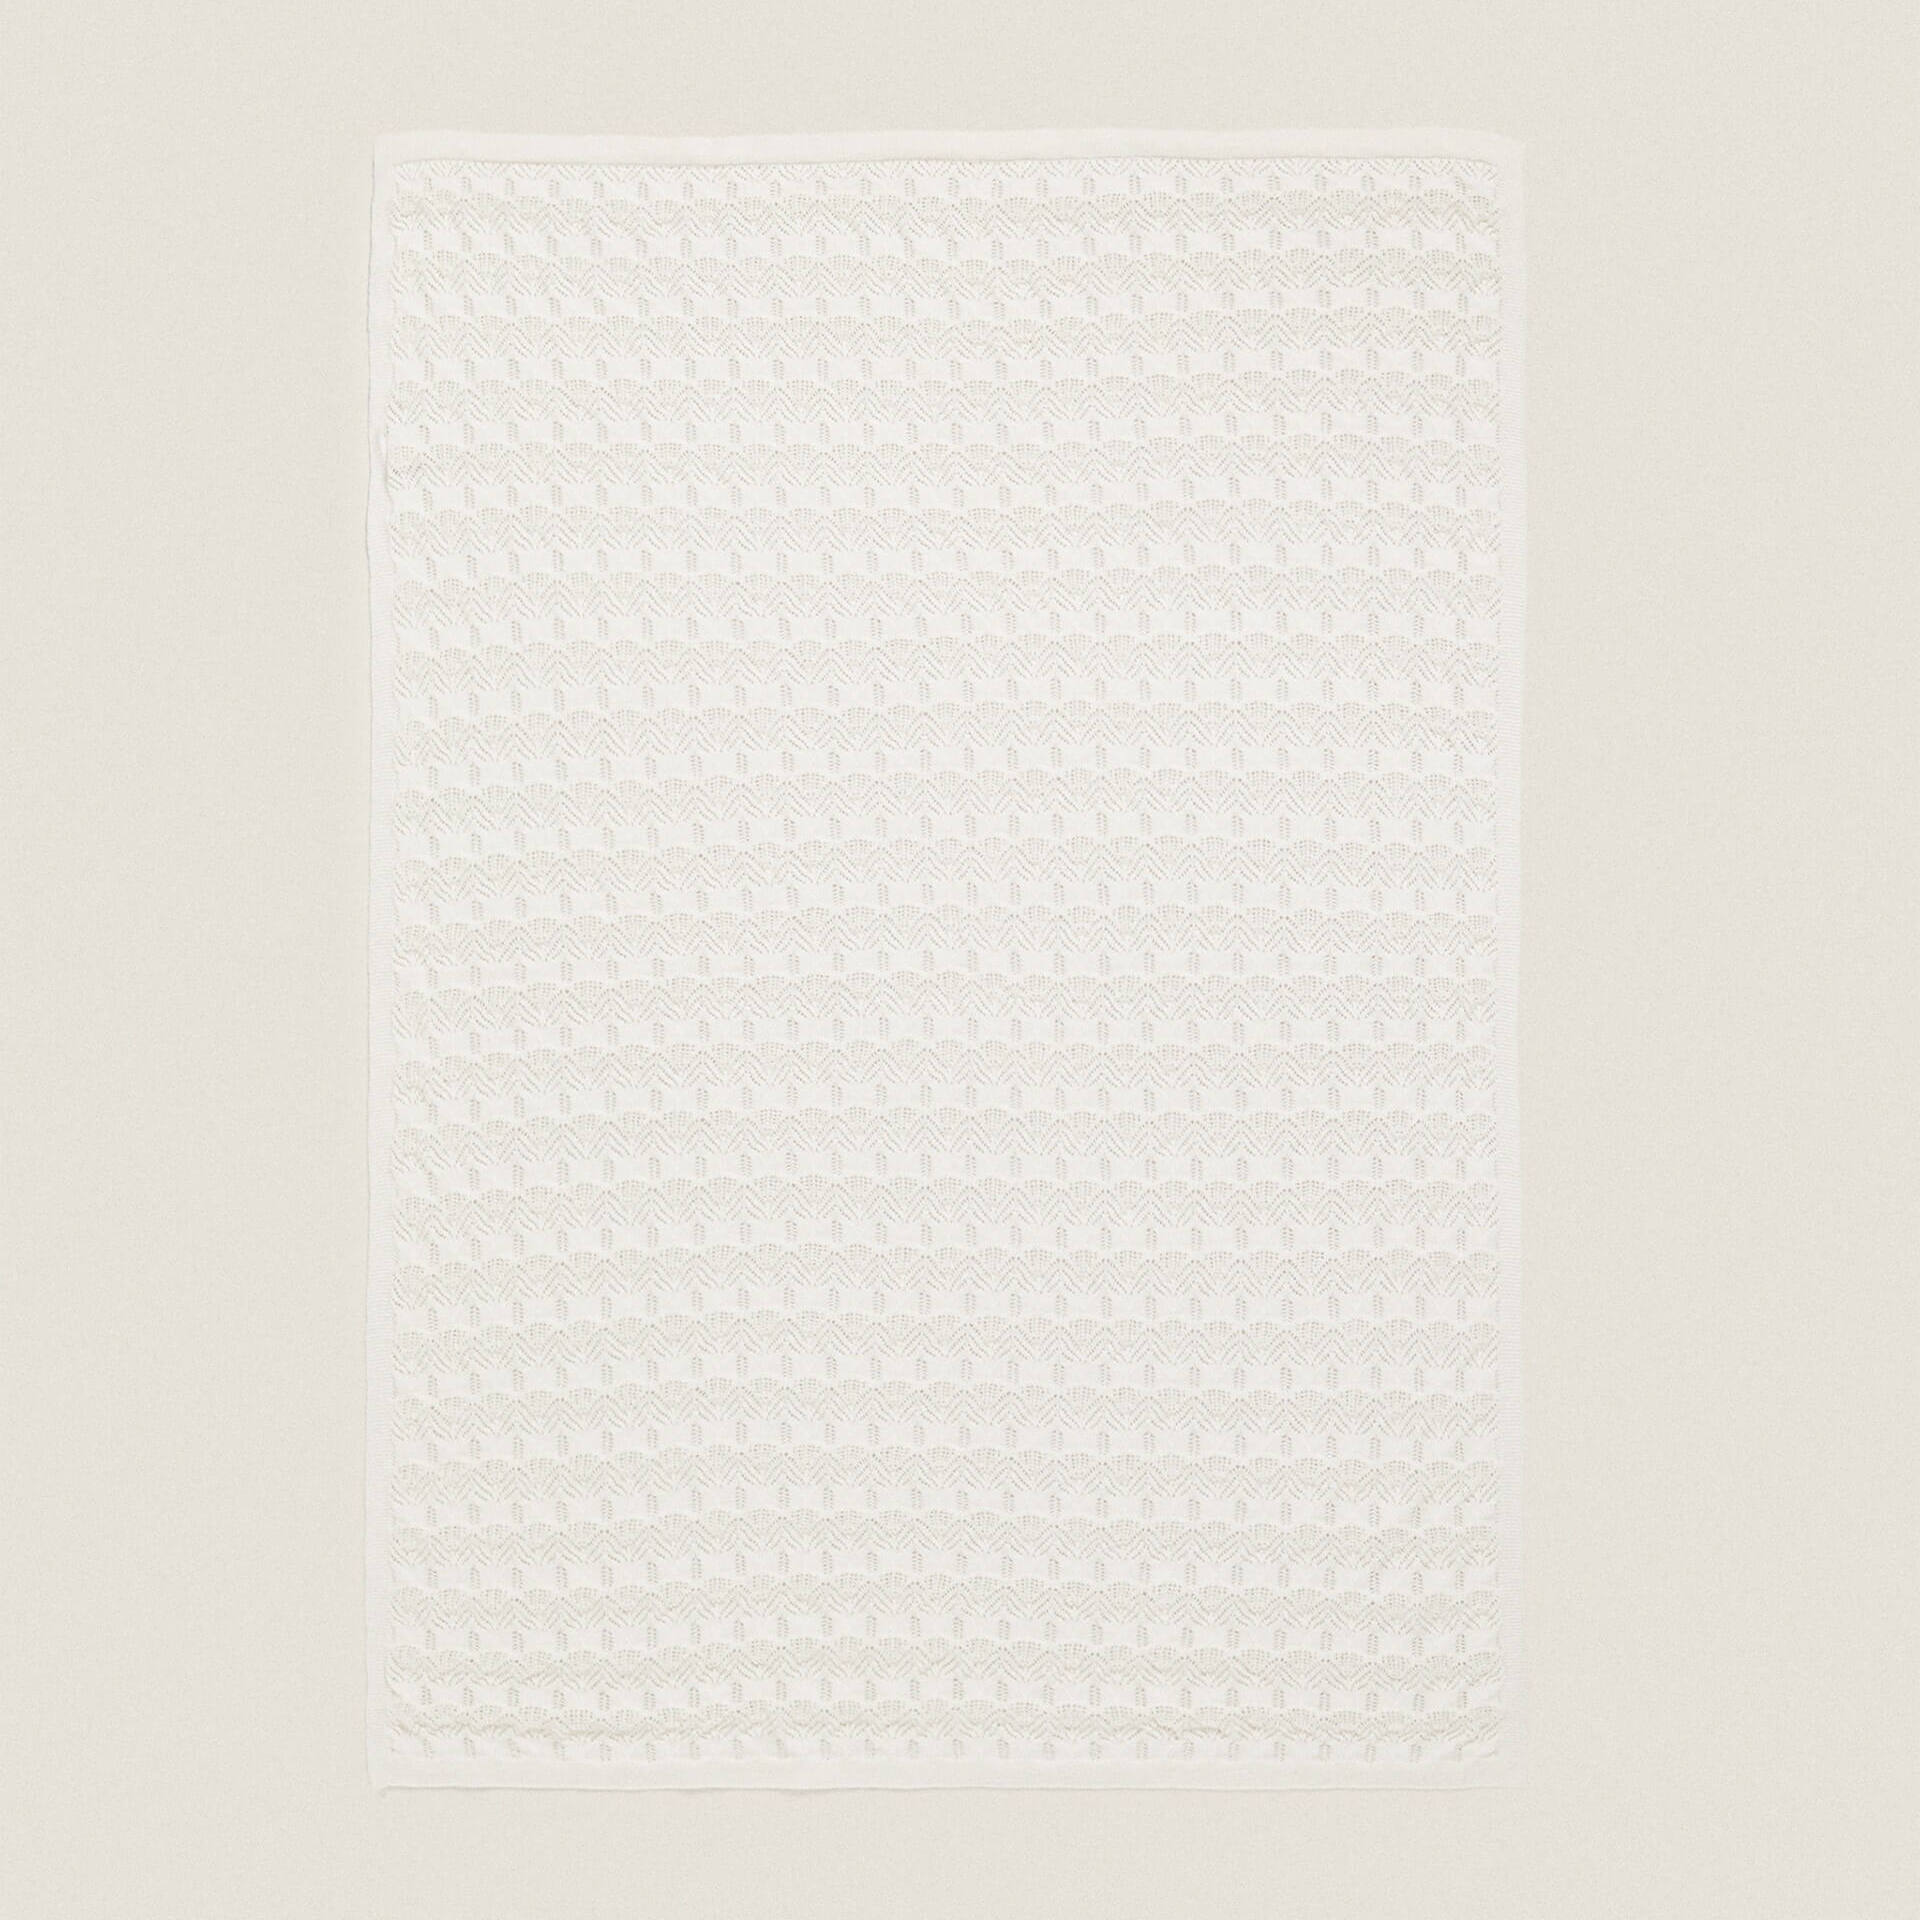 Детское одеяло Zara Home Open-Knit Cotton, белый муслиновое клетчатое детское хлопковое одеяло 120x120 из бамбука весна лето осень одеяло для новорожденных от 0 до 36 месяцев одеяла и пеленки